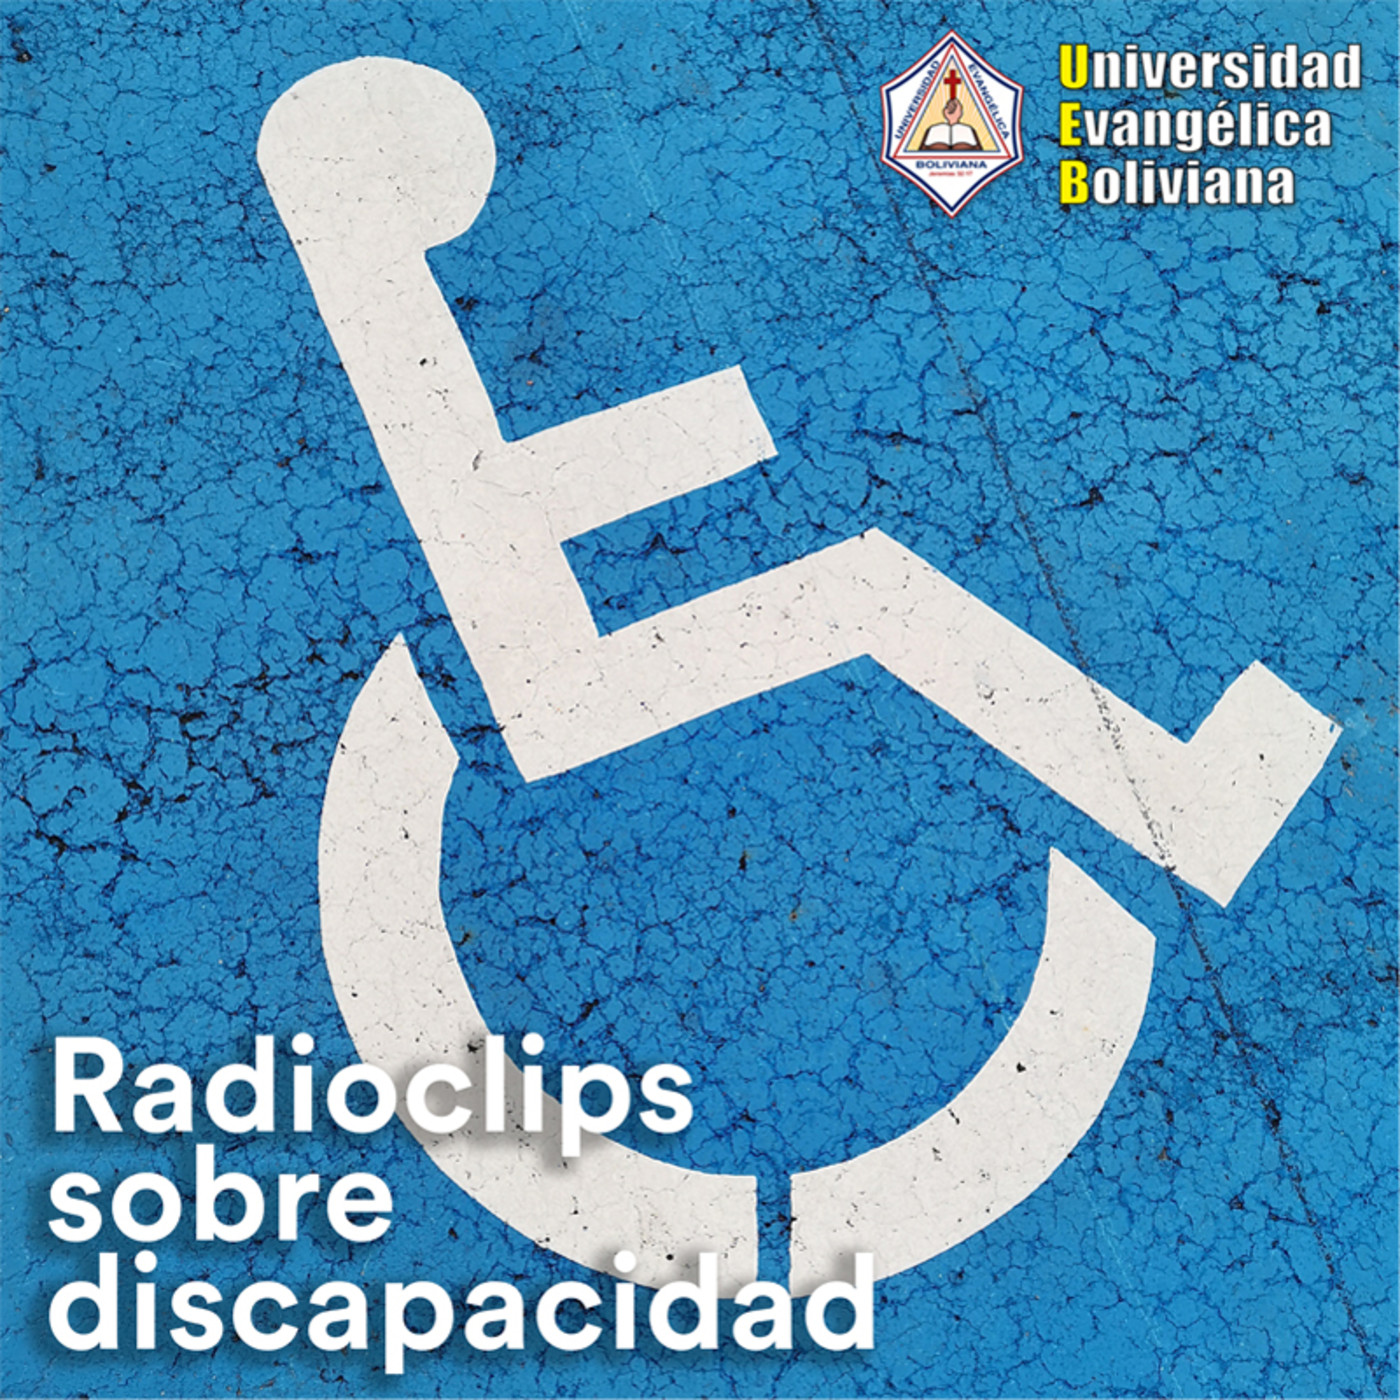 Radioclips sobre discapacidad